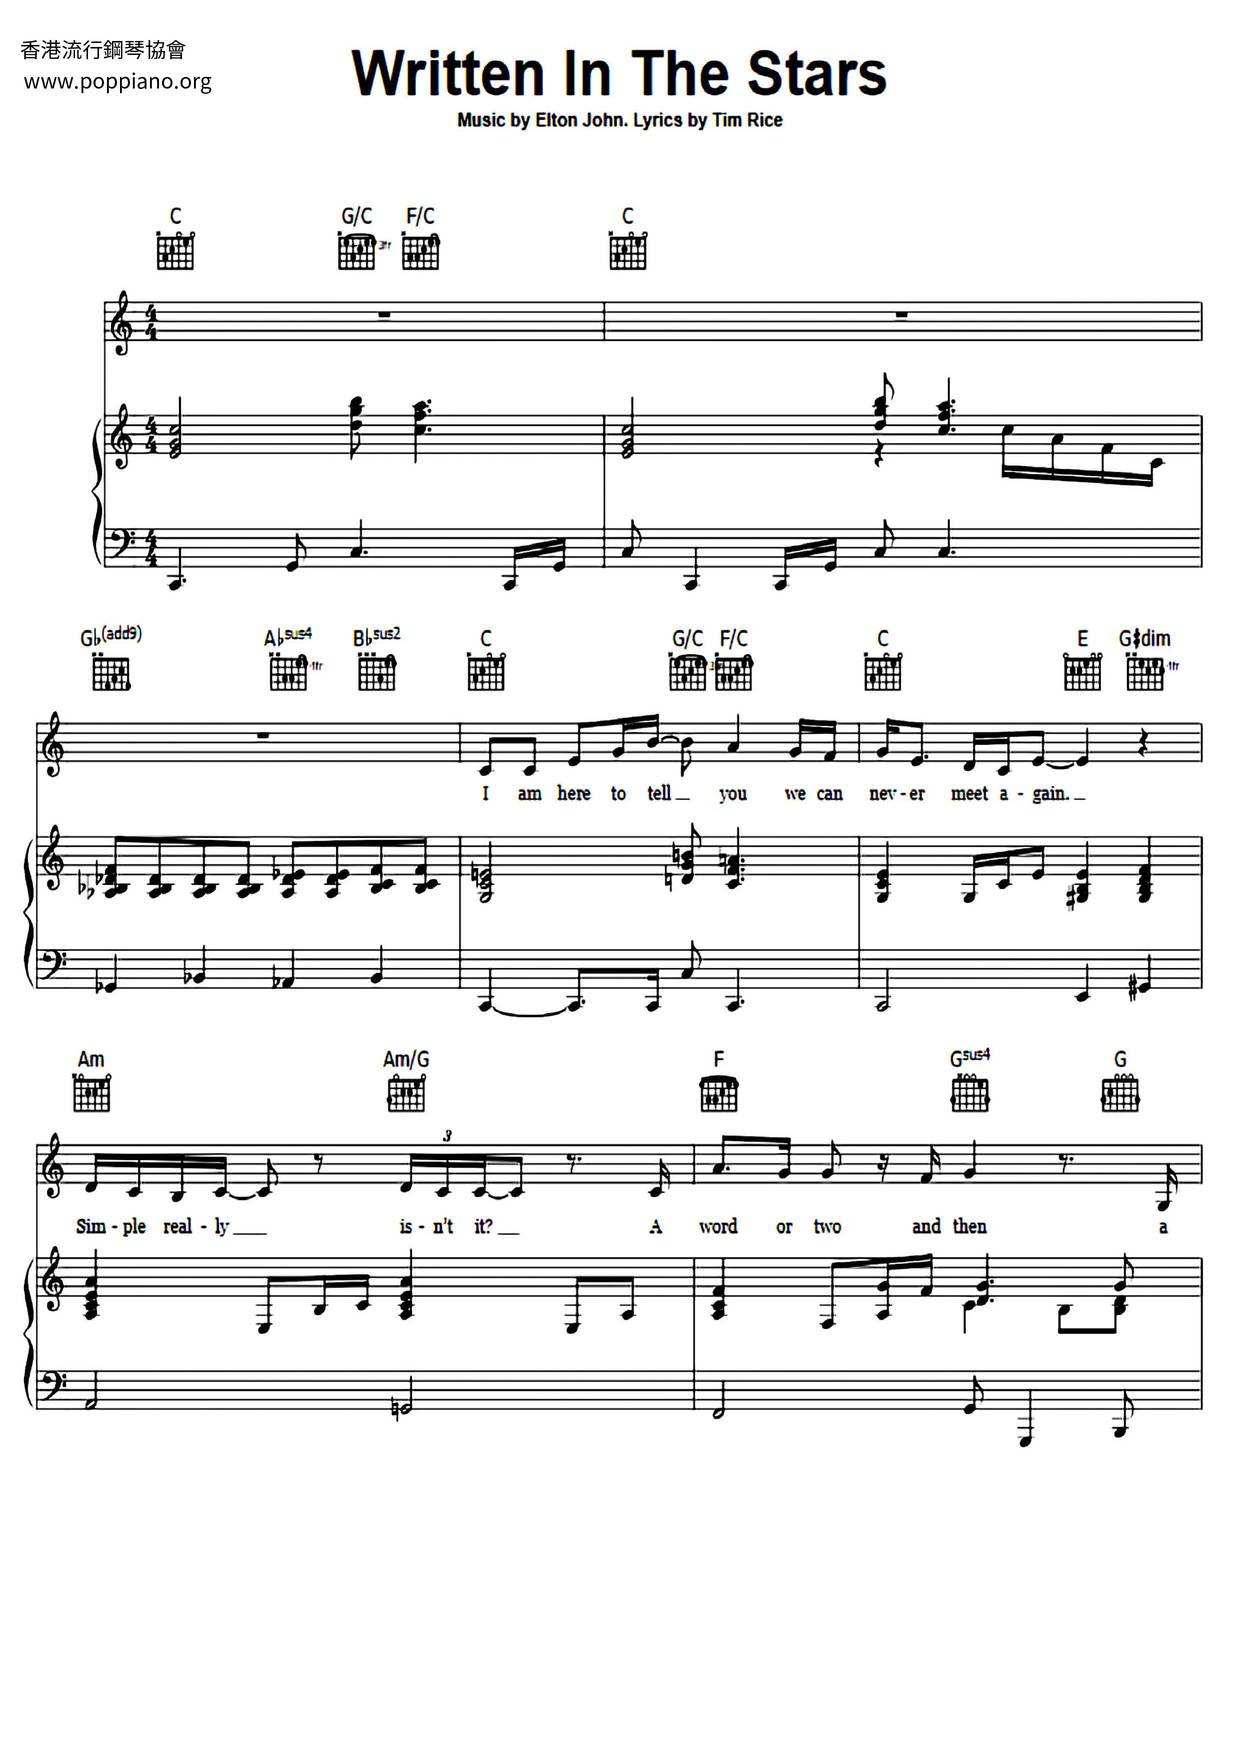 Written In The Stars Score